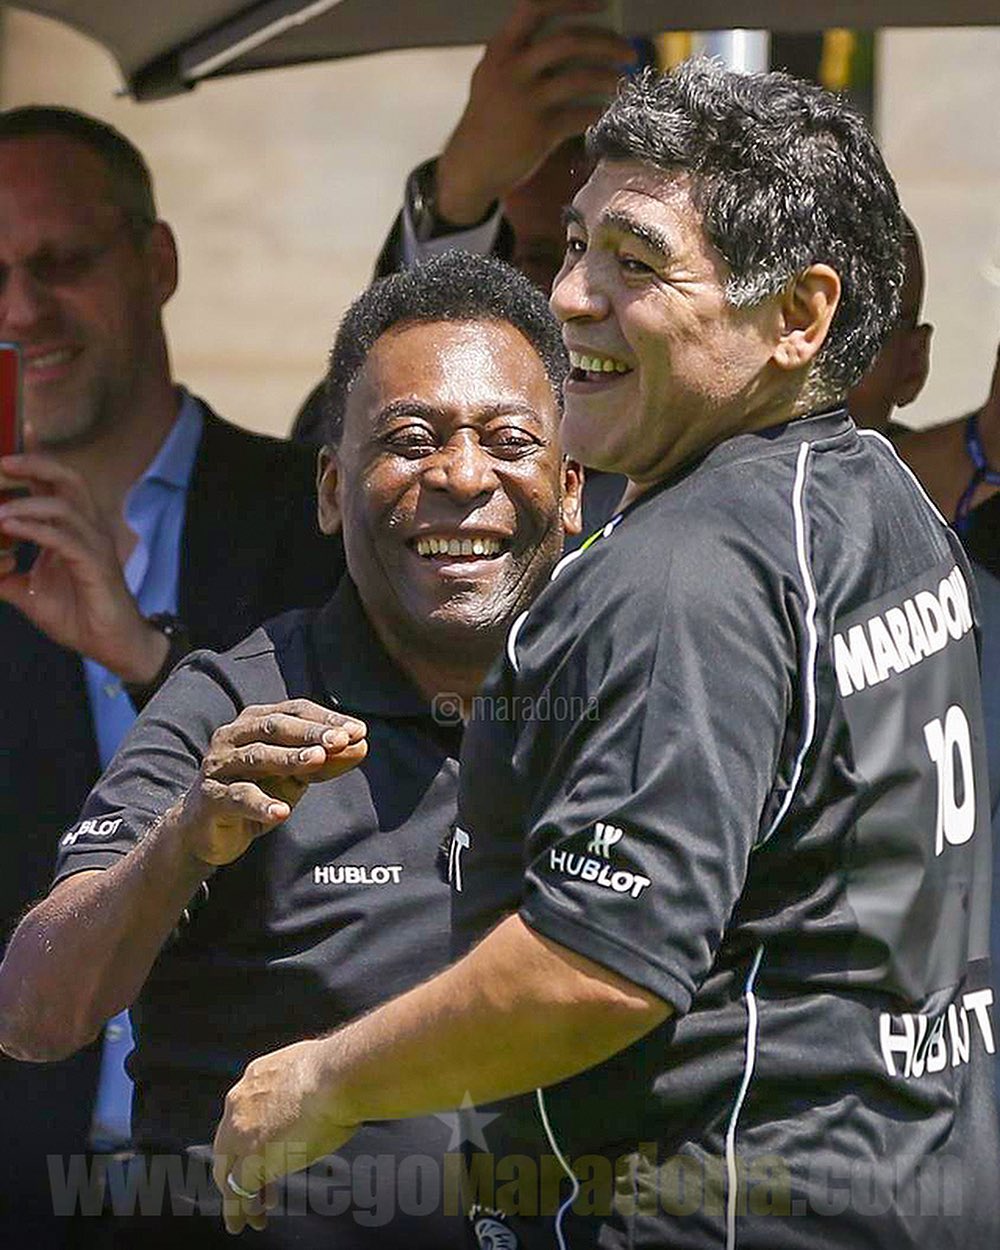 Berdoa bisa main sepakbola di surga, ini 11 potret persahabatan dua legenda dunia Pele dan Maradona